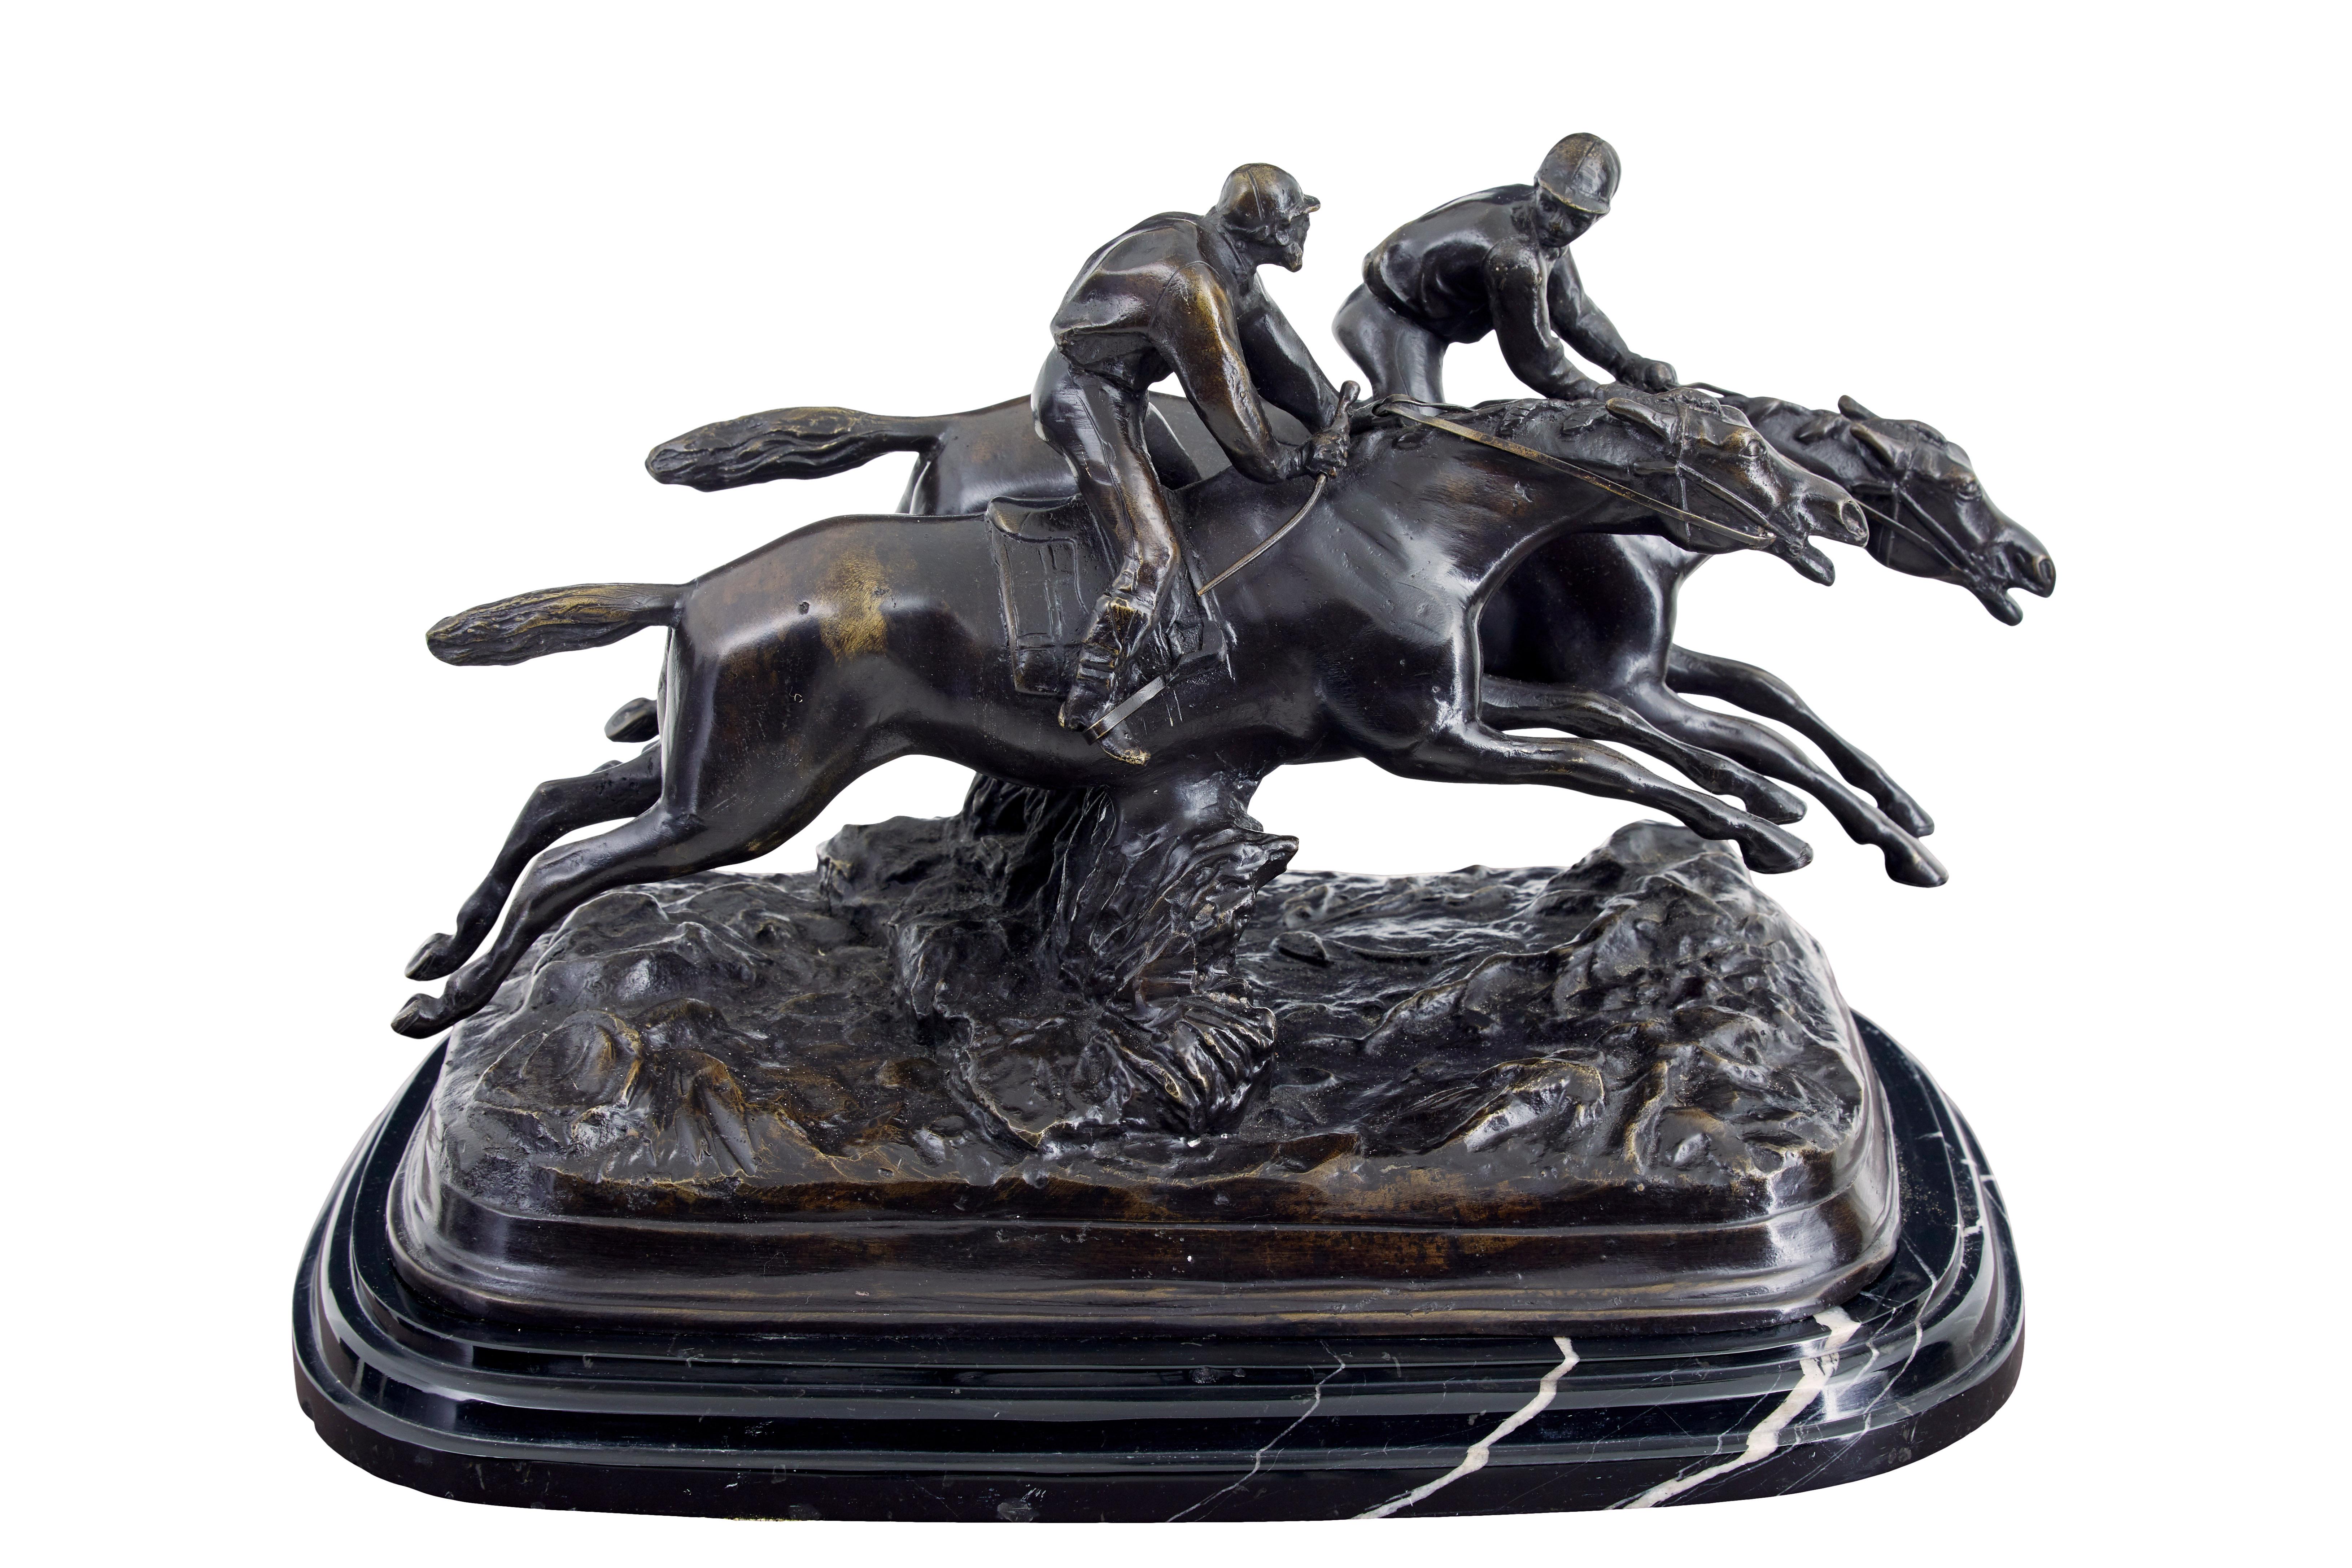 Gute Qualität Pferderennen Schreibtischplatte Bronze um 1990.

Schönes Beispiel für eine mittelgroße Bronze, die wir viele Jahre lang als Ladendekoration verwendet haben.  Zeigt ein Pferdepaar im vollen Galopp, wobei sich die Jockeys gegenseitig